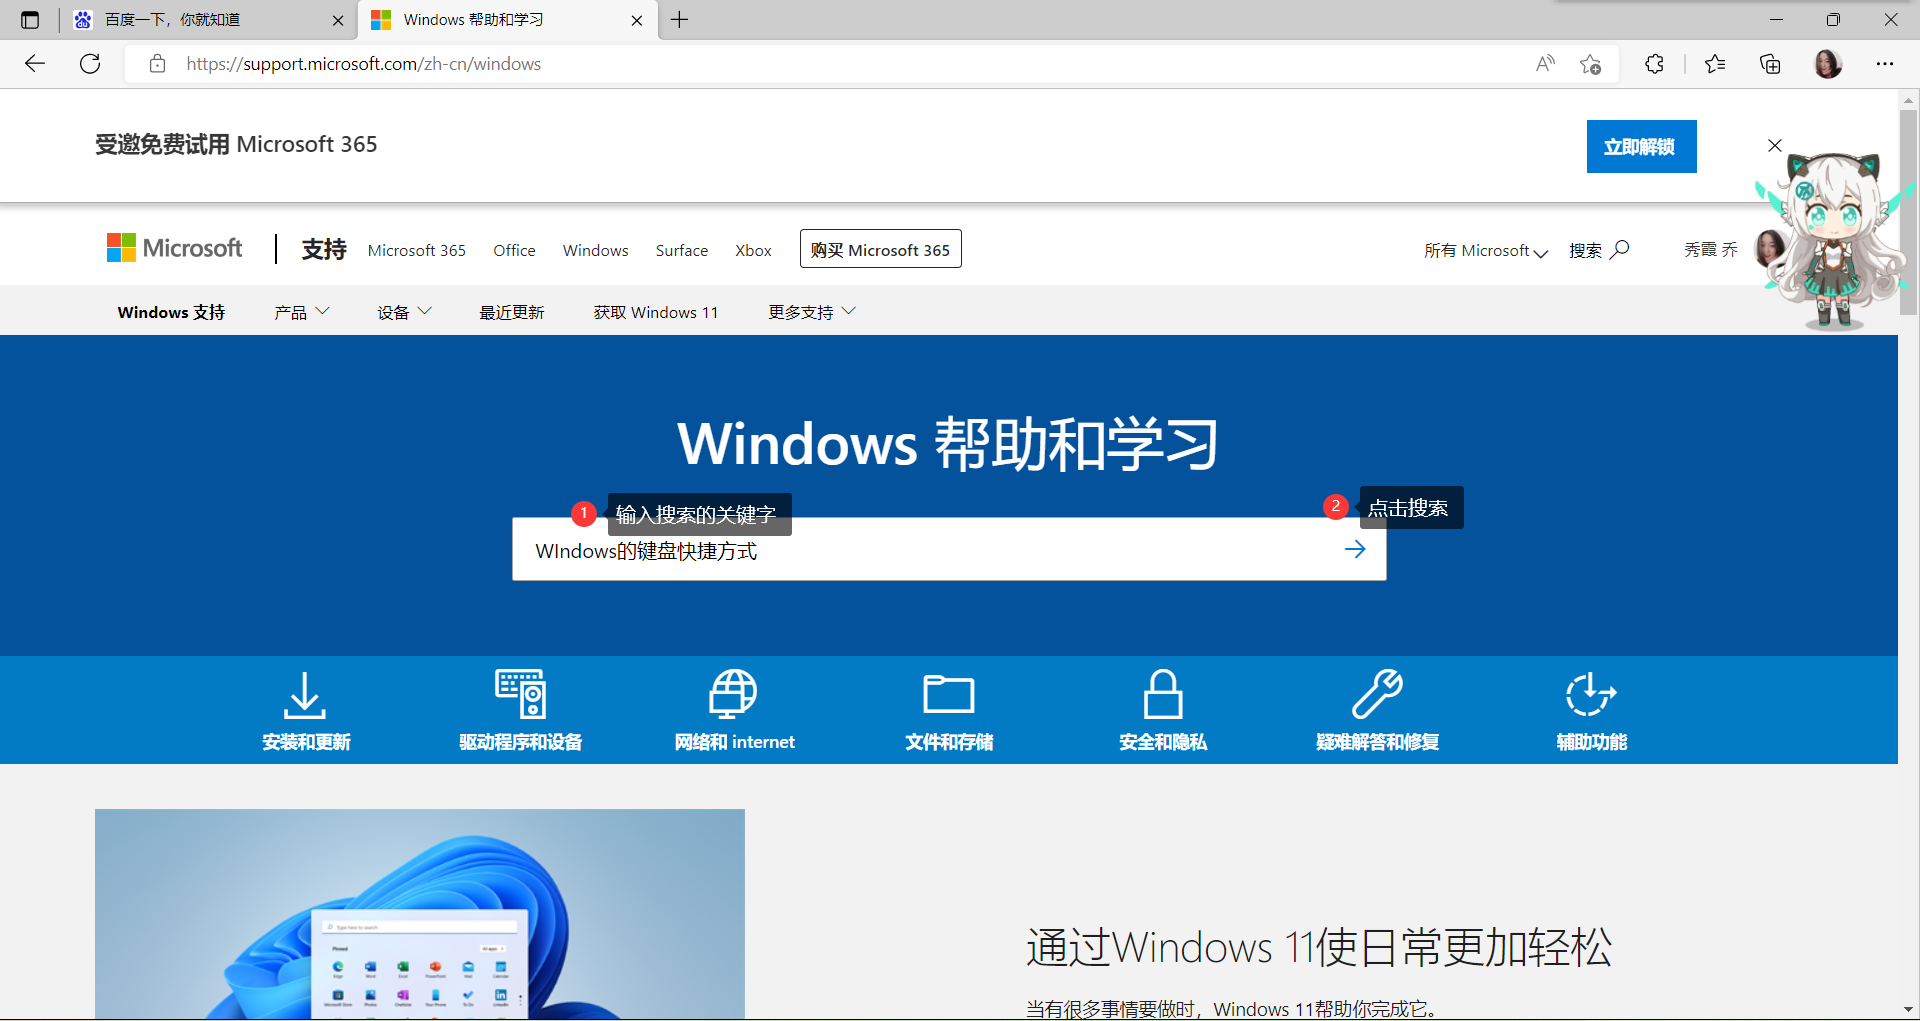 Windows11帮助和学习中搜索关键字WIndows的键盘快捷方式